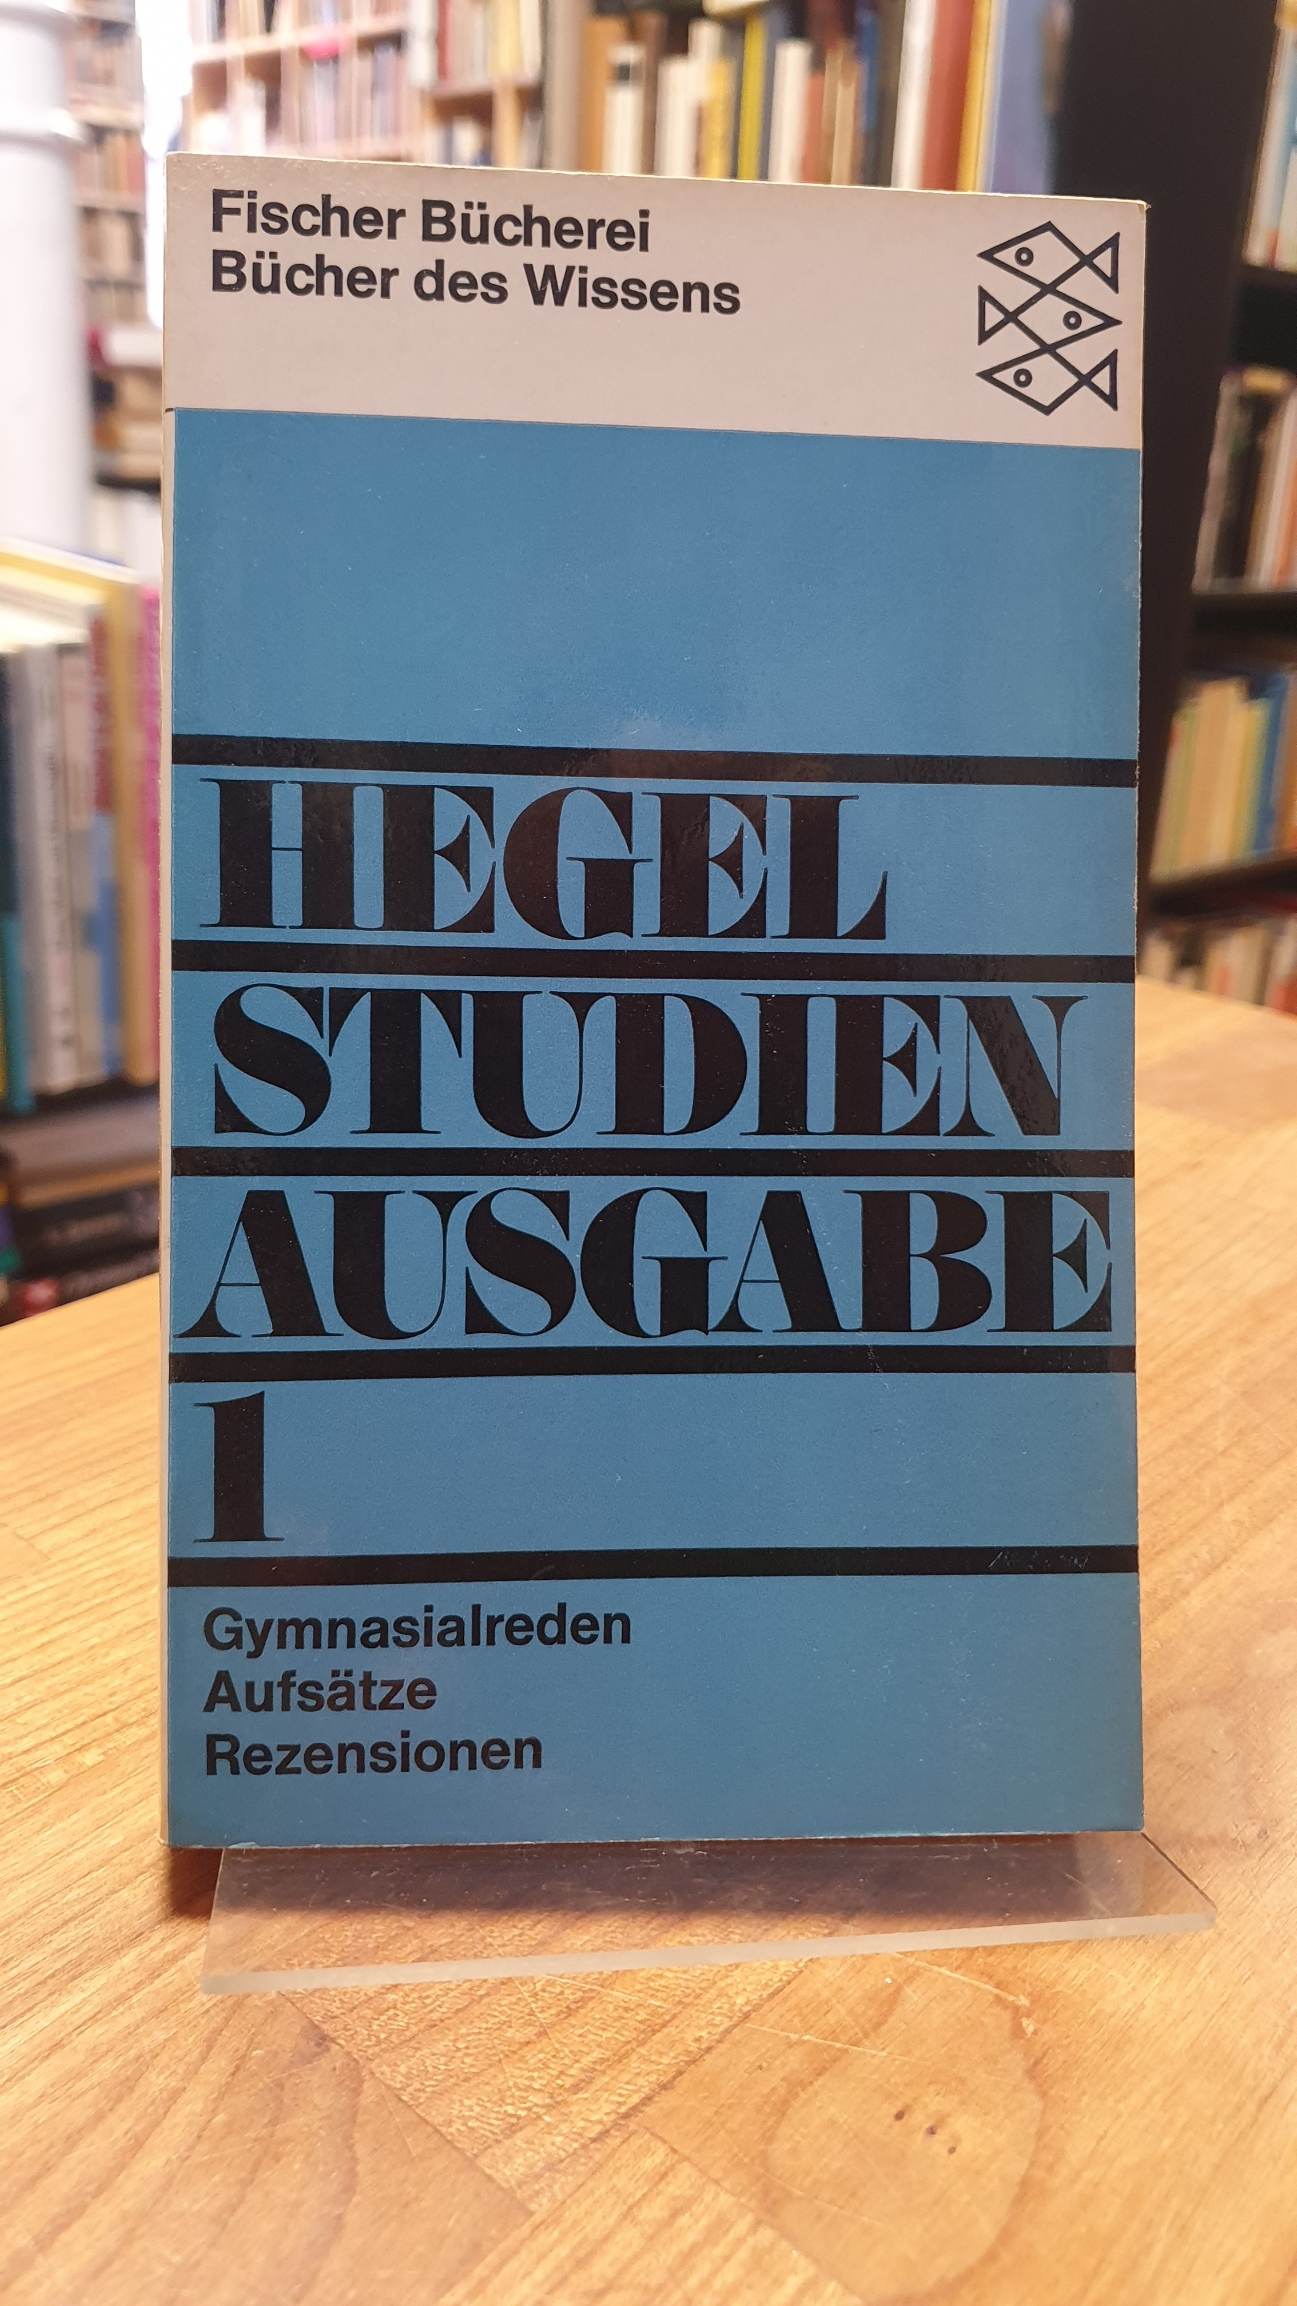 Hegel, Studienausgabe [in drei Bänden] – Band 1: Gymnasialreden – Aufsätze – Rez